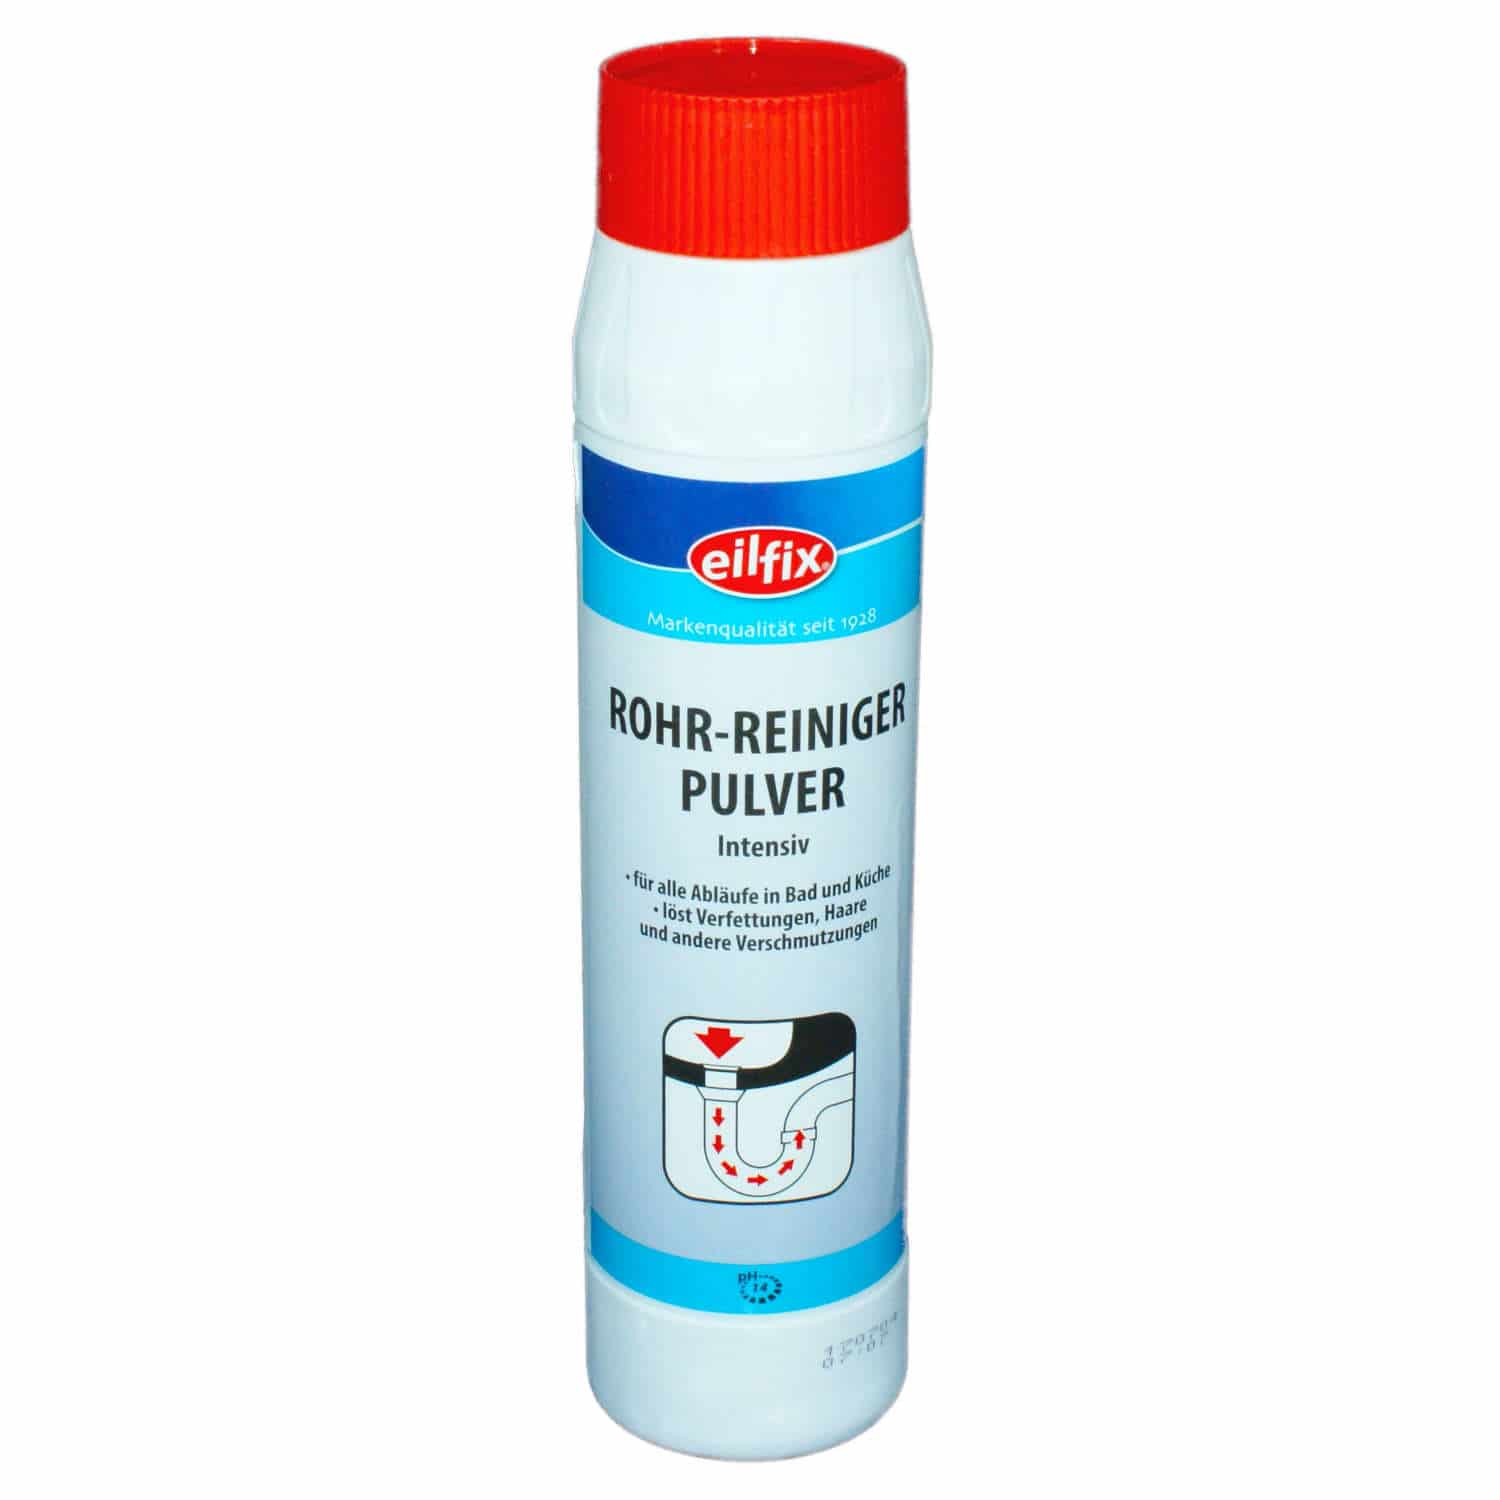 Rohr-Reiniger Pulver Intensiv Eilfix  Flasche à 1'000 g